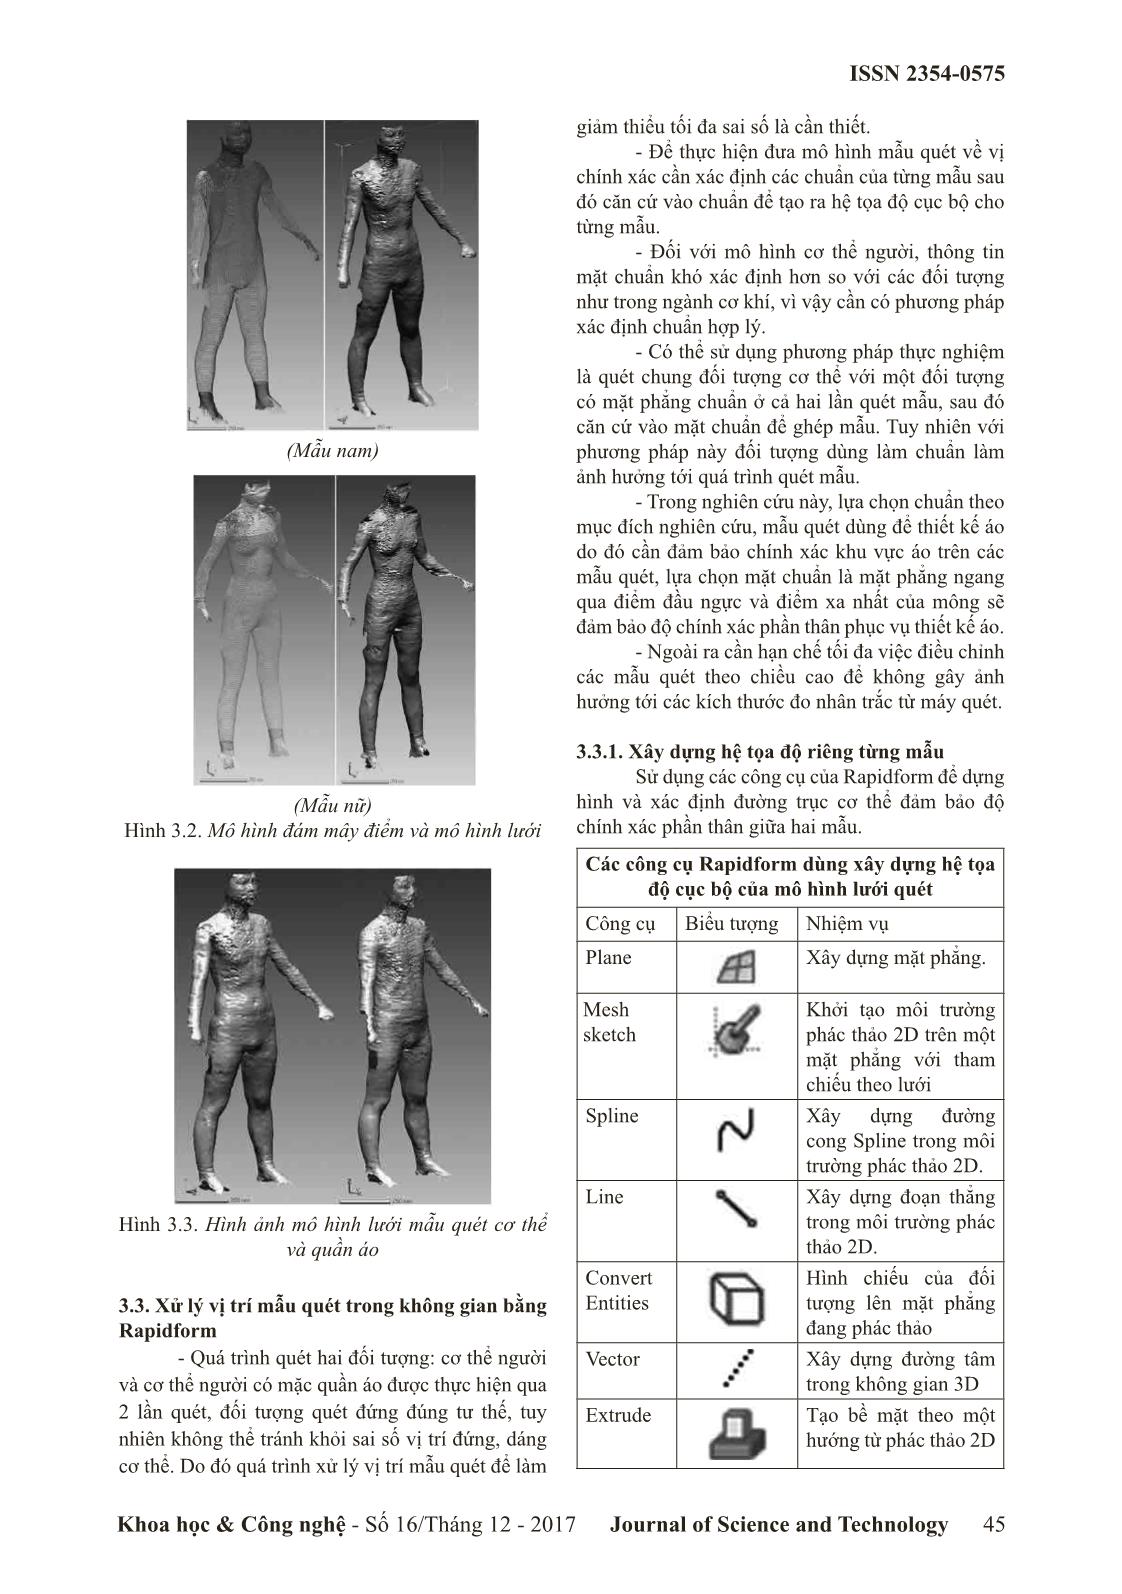 Xử lý dữ liệu quét mẫu cơ thể người phục vụ thiết kế quân áo 3 chiều trang 3